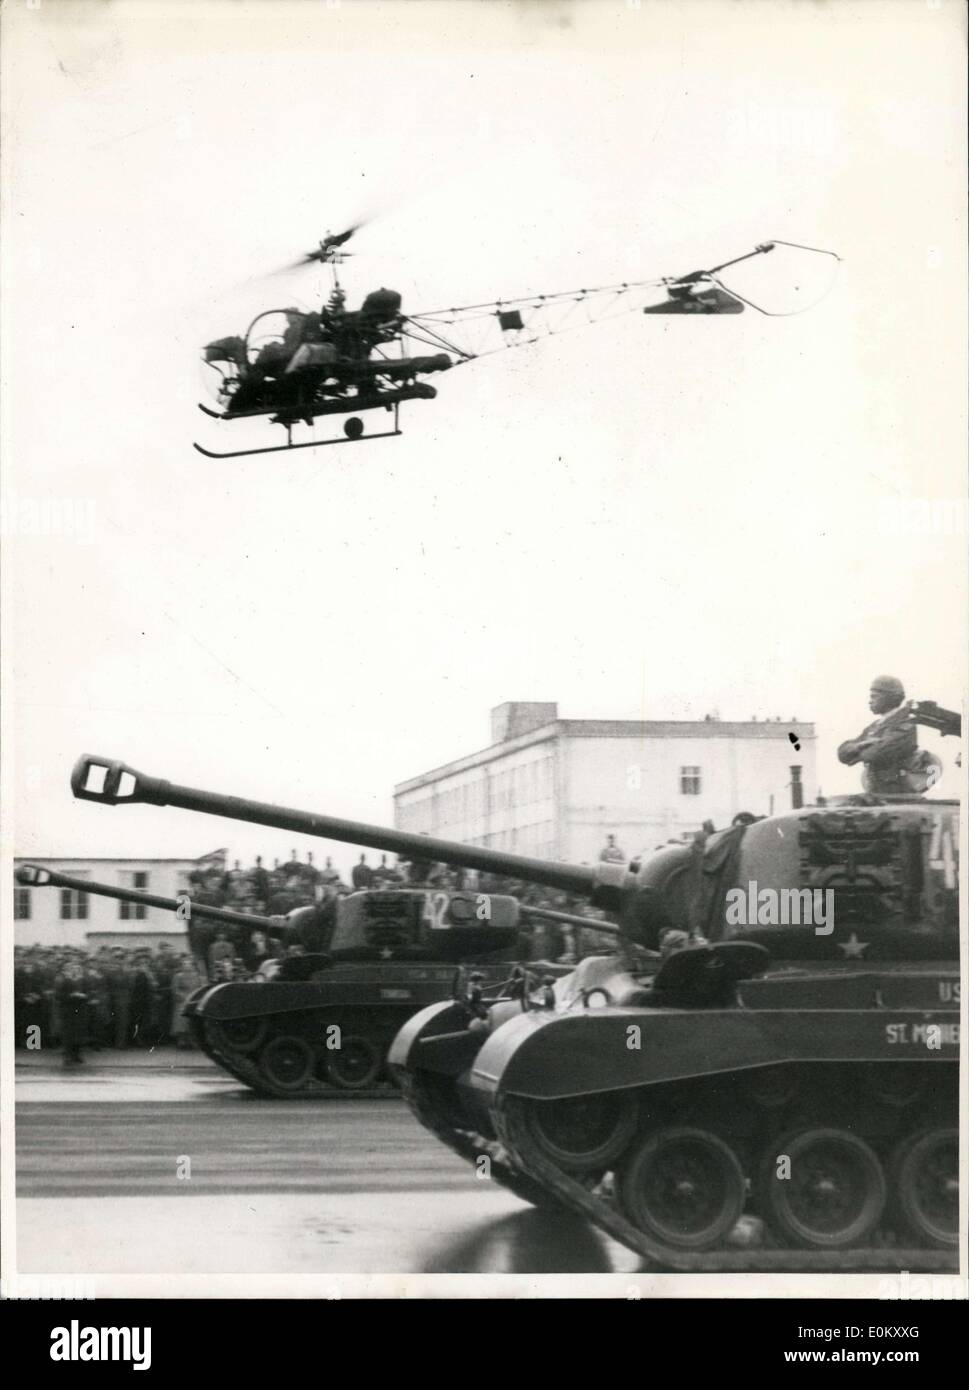 25 octobre 1952 - Une parade avec des hélicoptères... Le 6e Régiment d'infanterie américaine a tenu un défilé à Berlin pour son 154e anniversaire ''.'' et d'autres unités motorisées, ainsi que des hélicoptères, ont pris part. Banque D'Images